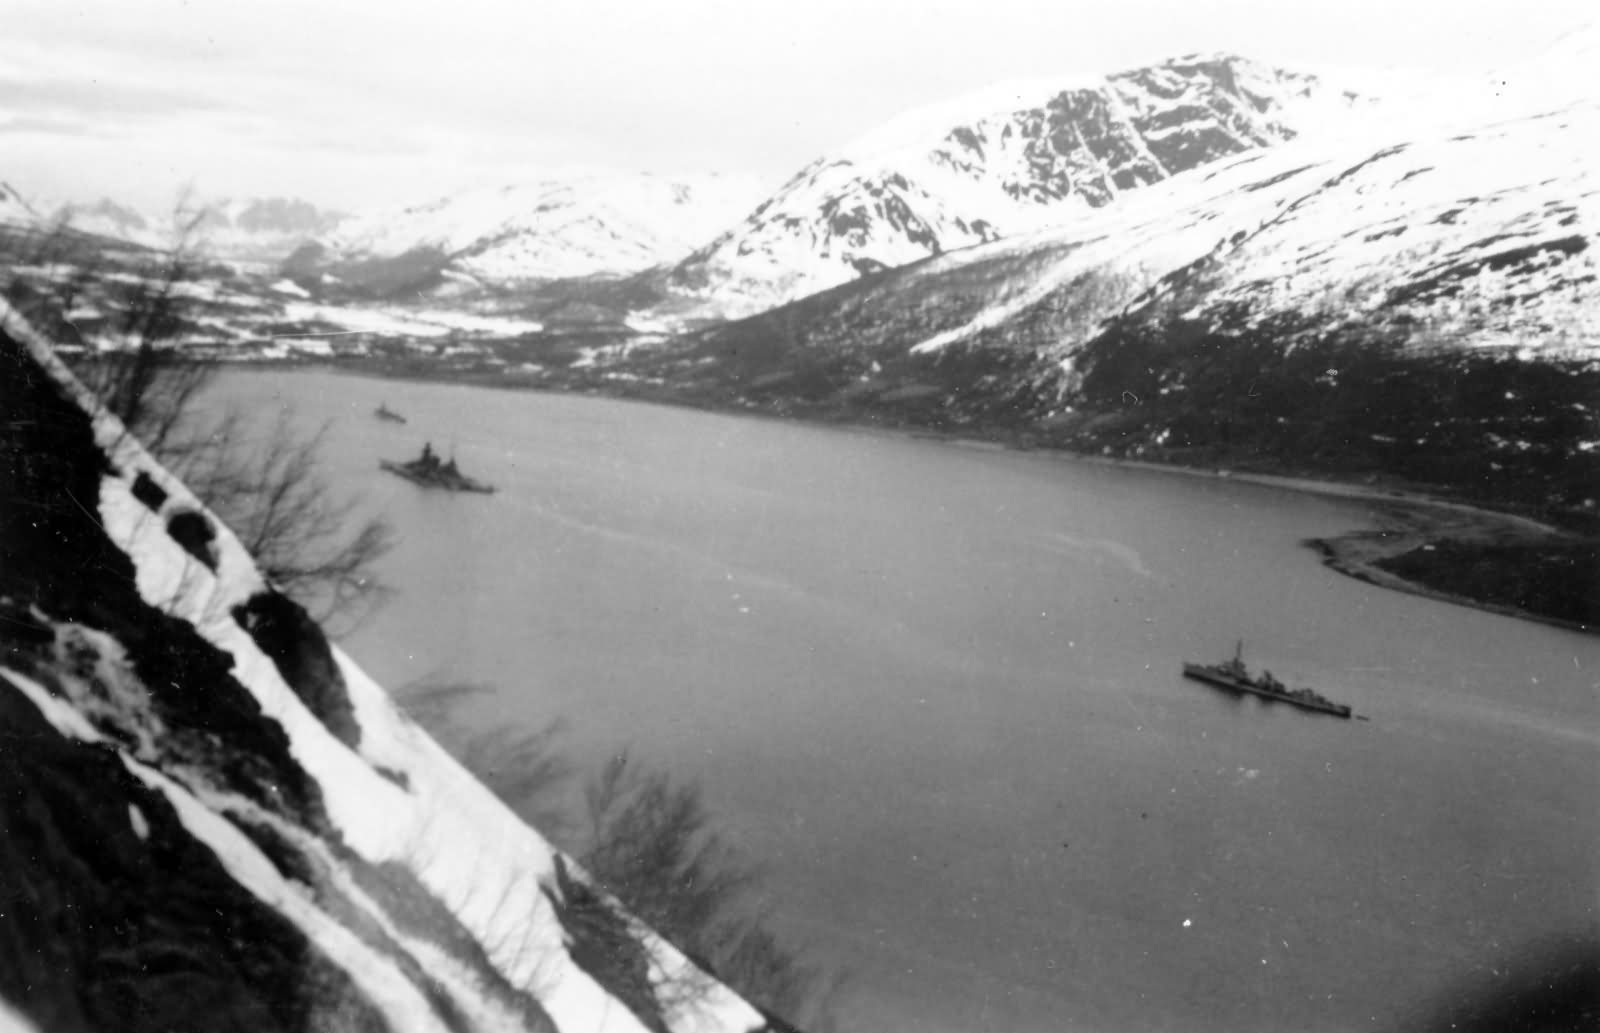 Scharnhorst in Norway